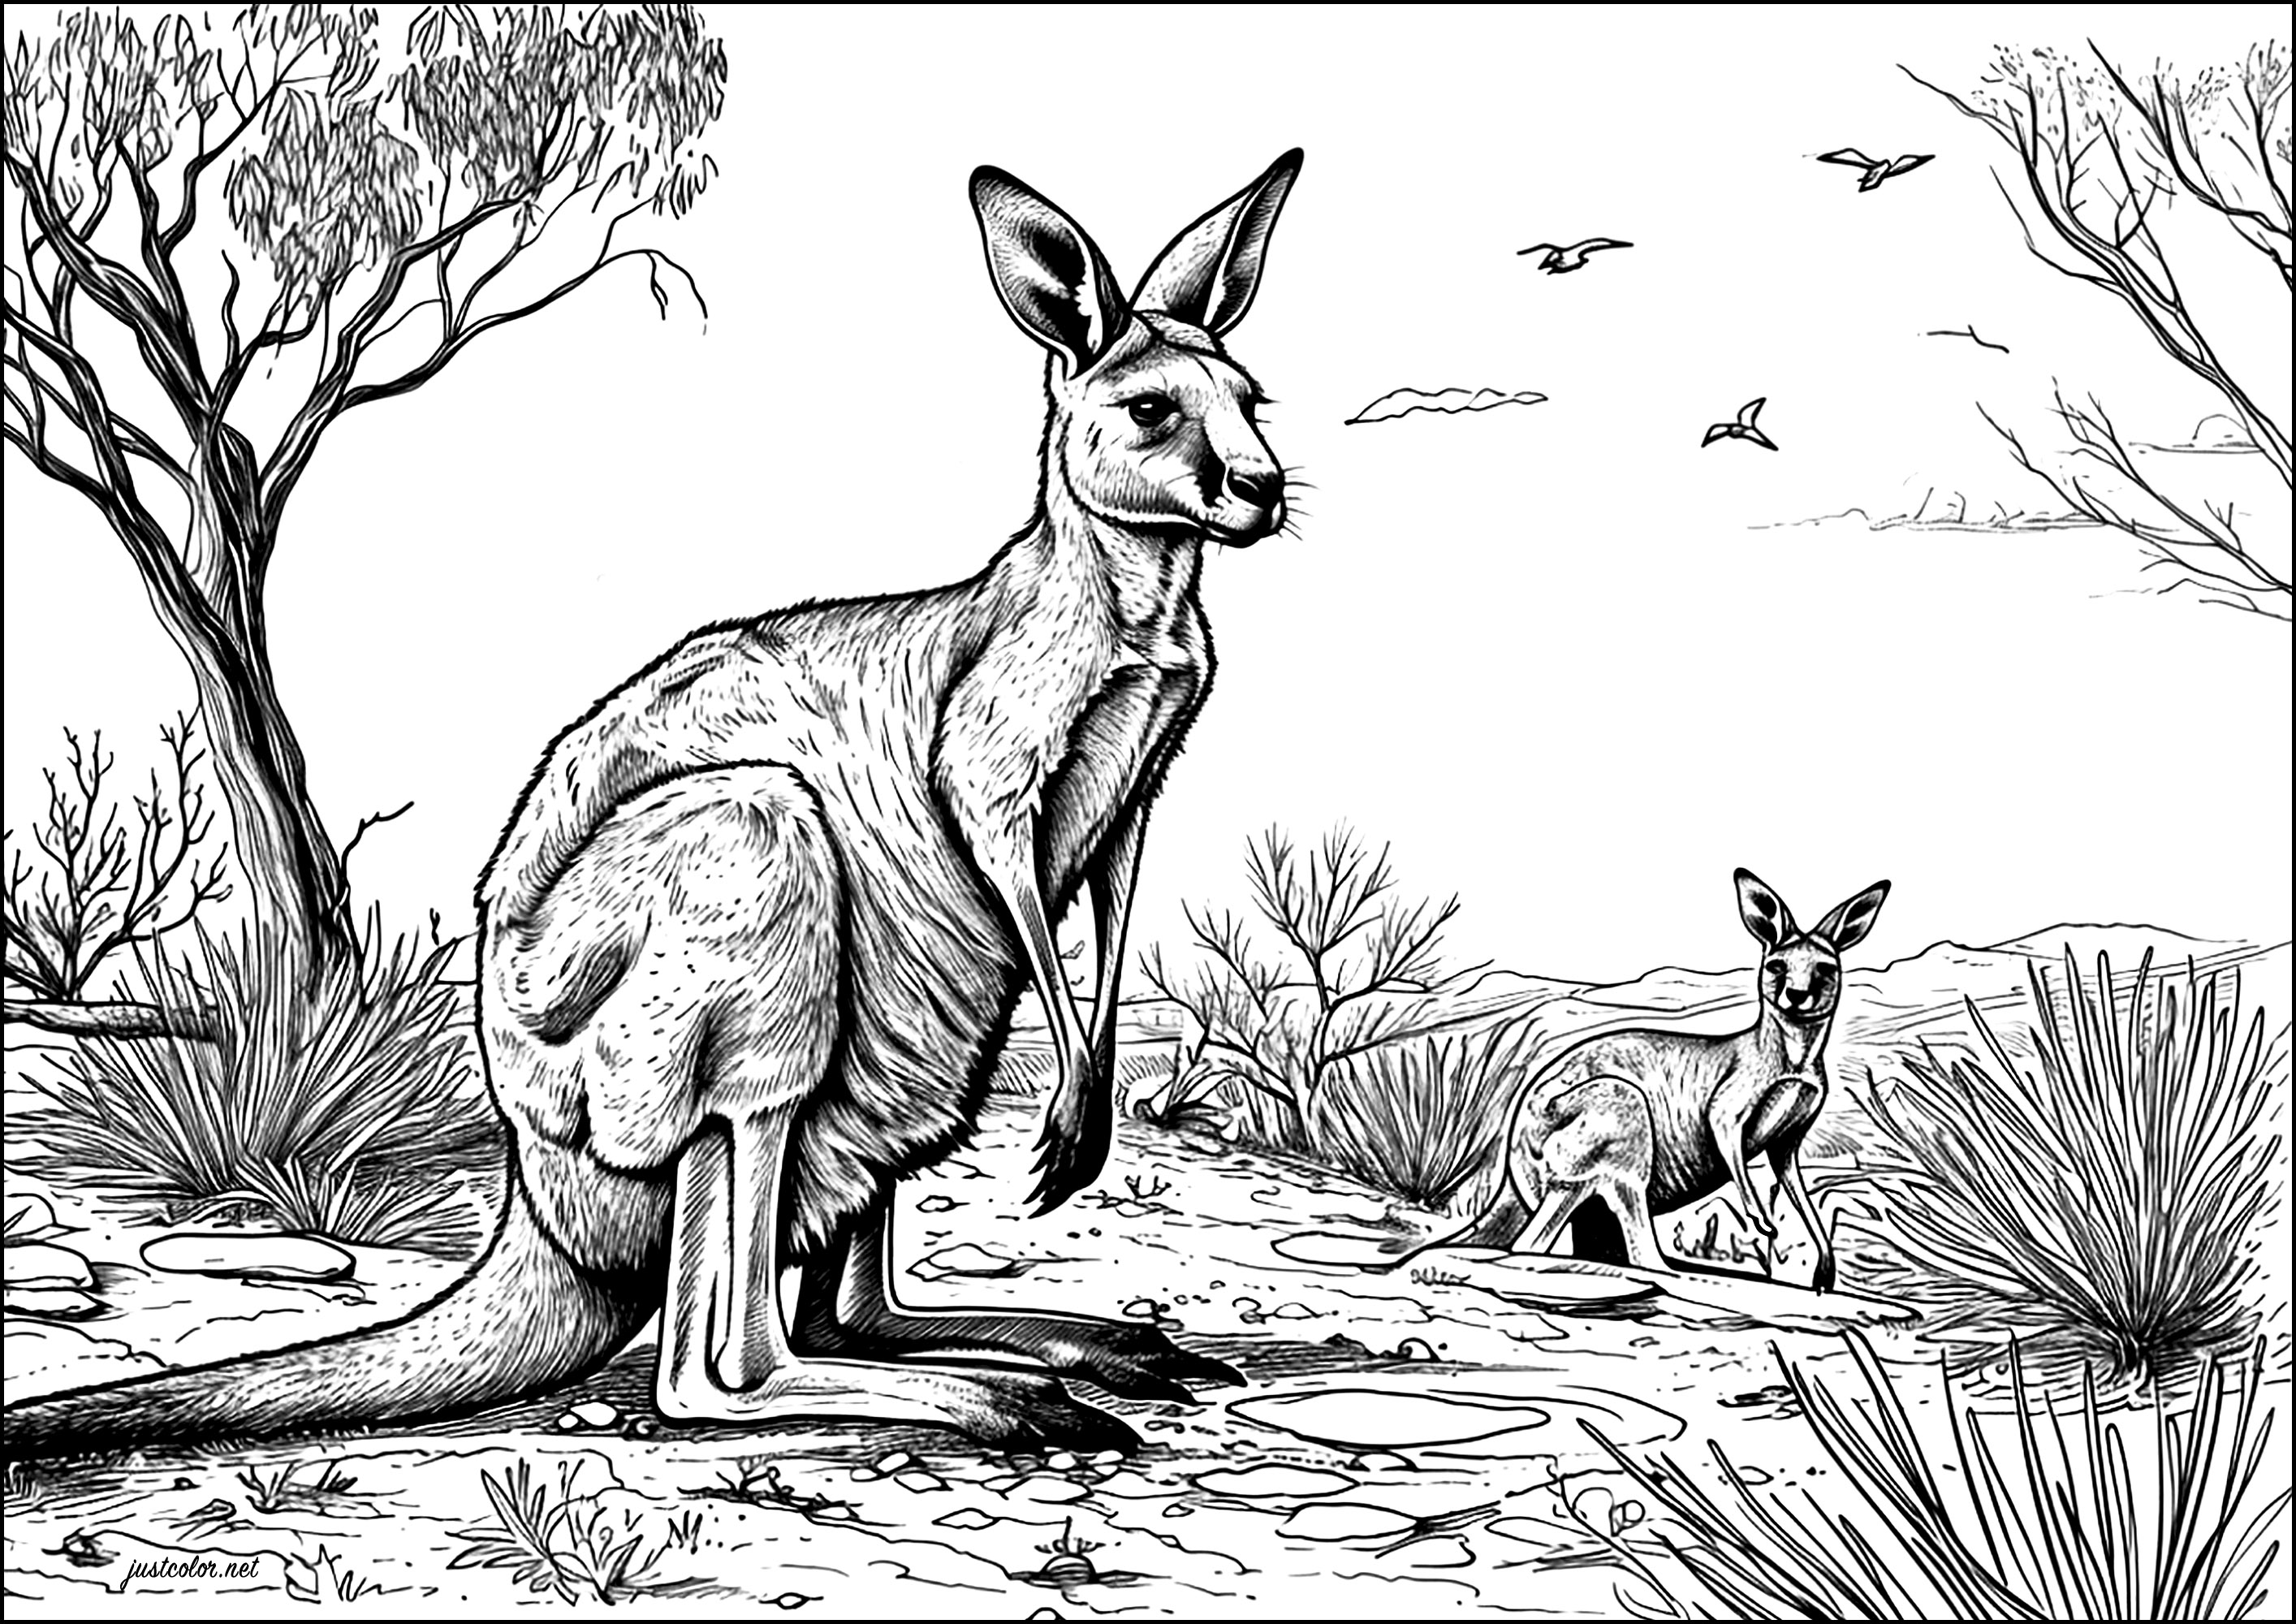 Zwei Kängurus in der australischen Wüste. Eine sehr realistische Szene, mit vielen Details zum Ausmalen